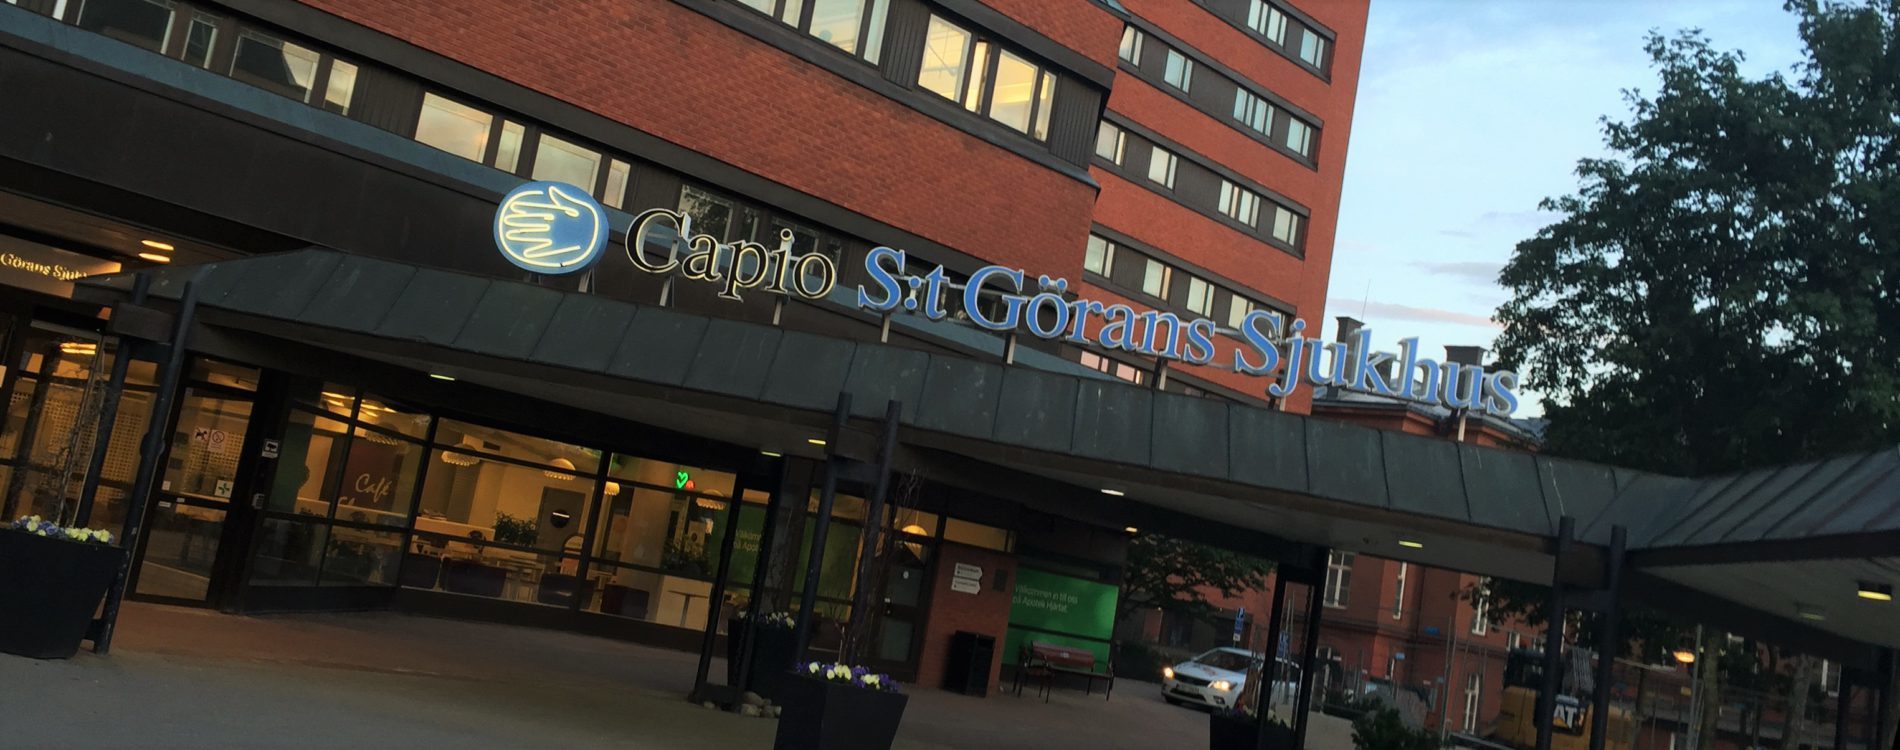 St. Göran Hospital